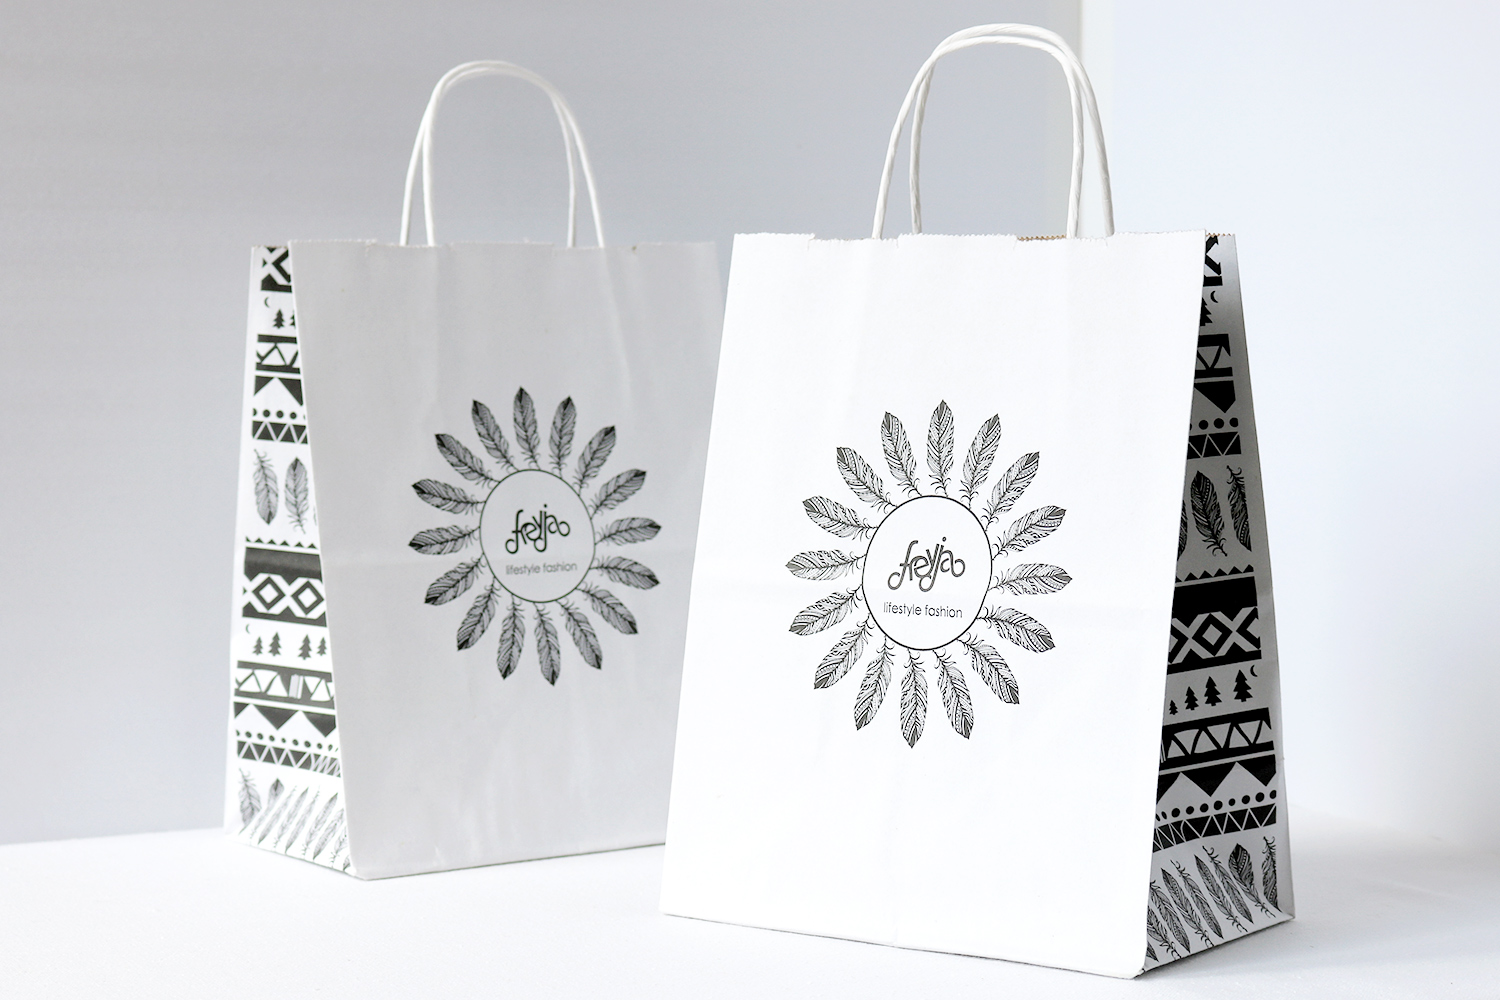 Freyja Lifestyle Fashion Retail Bags